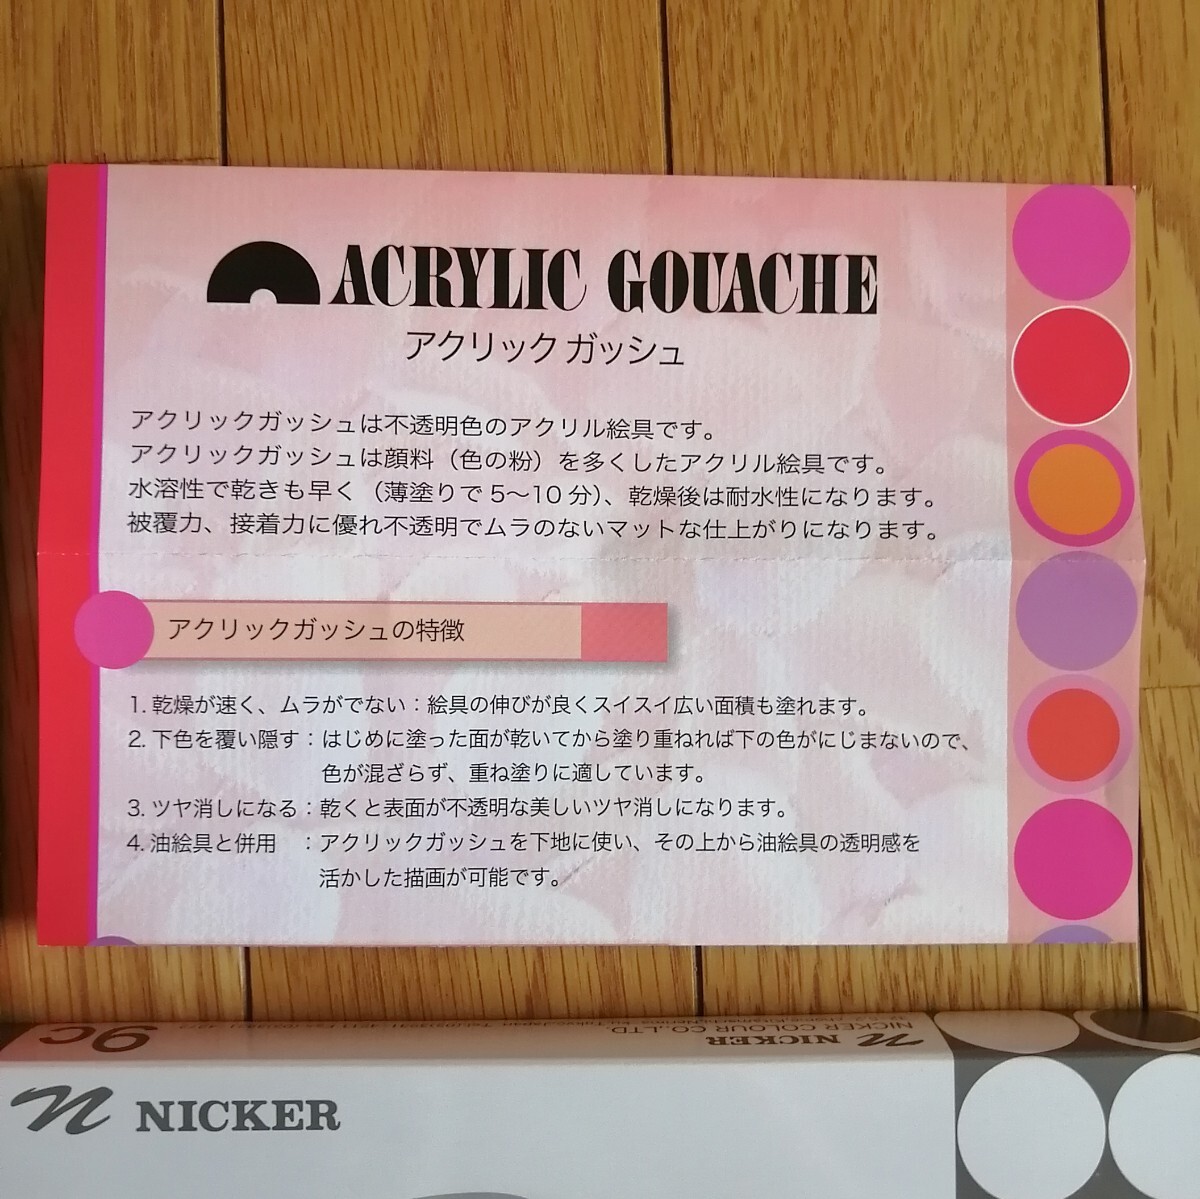 ni car (NICKER)* A click gouache acrylic fiber gouache ( un- transparent acrylic fiber coloring material ) 18ps.